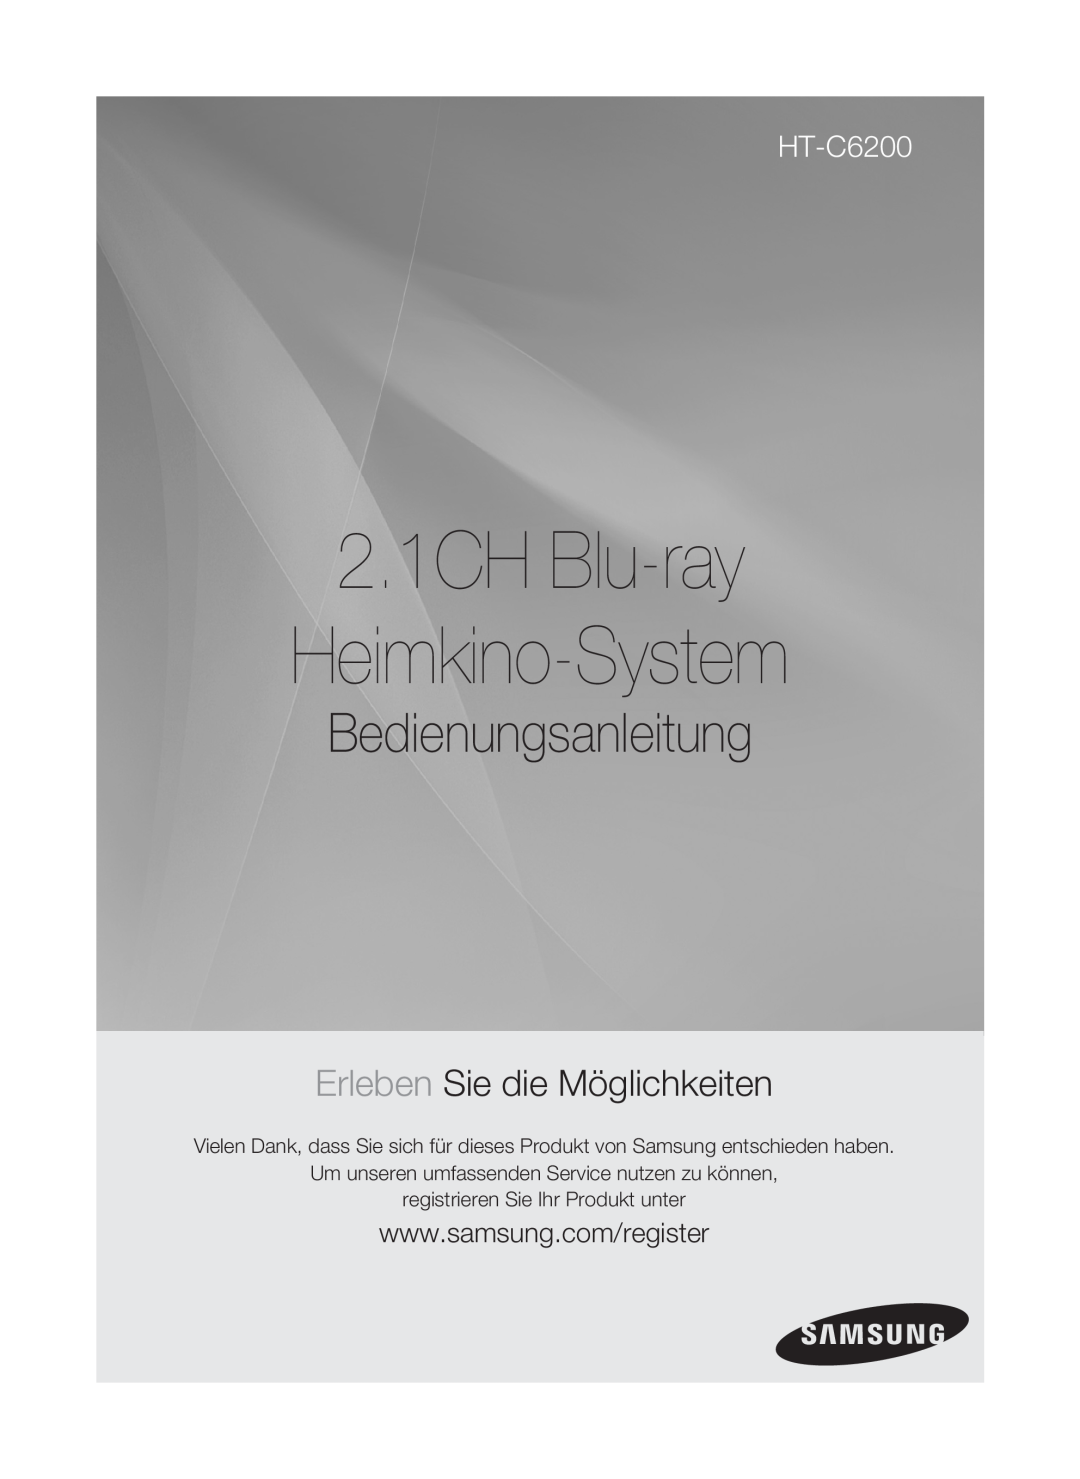 Samsung HT-C6200/XEF manual 2.1CH Blu-ray Heimkino-System, Bedienungsanleitung, Erleben Sie die Möglichkeiten 